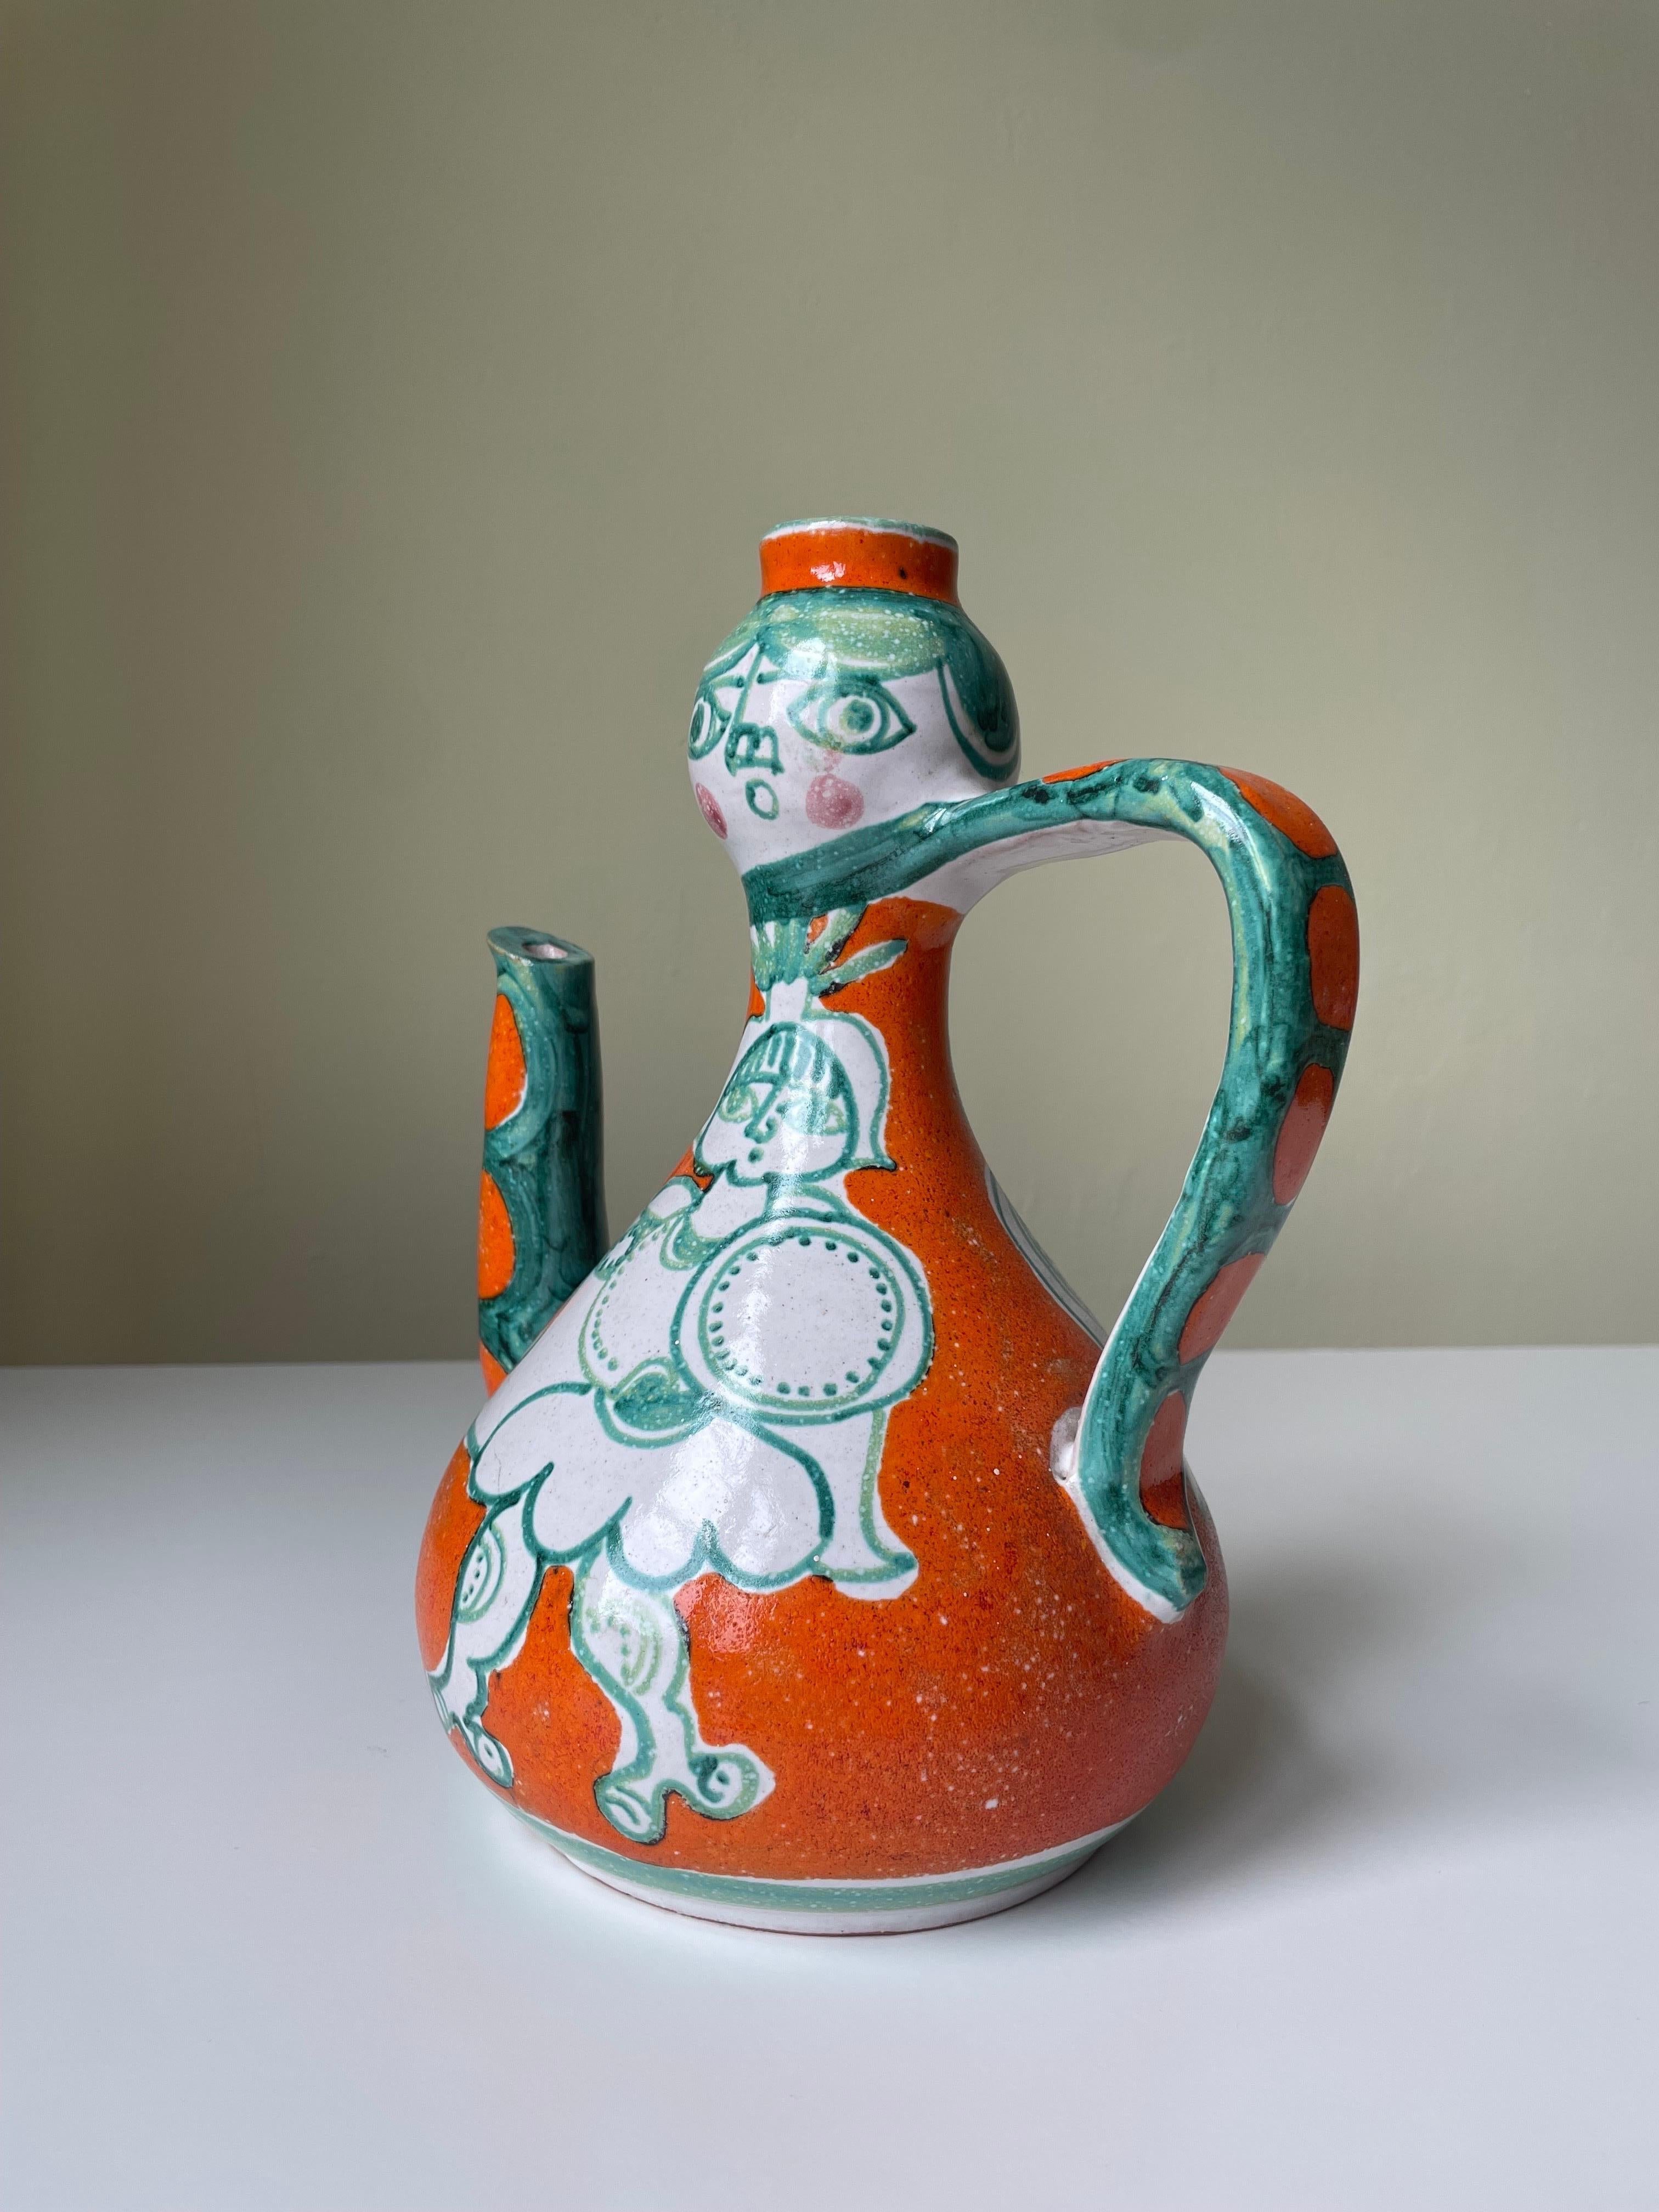 Glazed Giovanni de Simone Picasso Style Italian Figurative Pitcher Vase, 1964